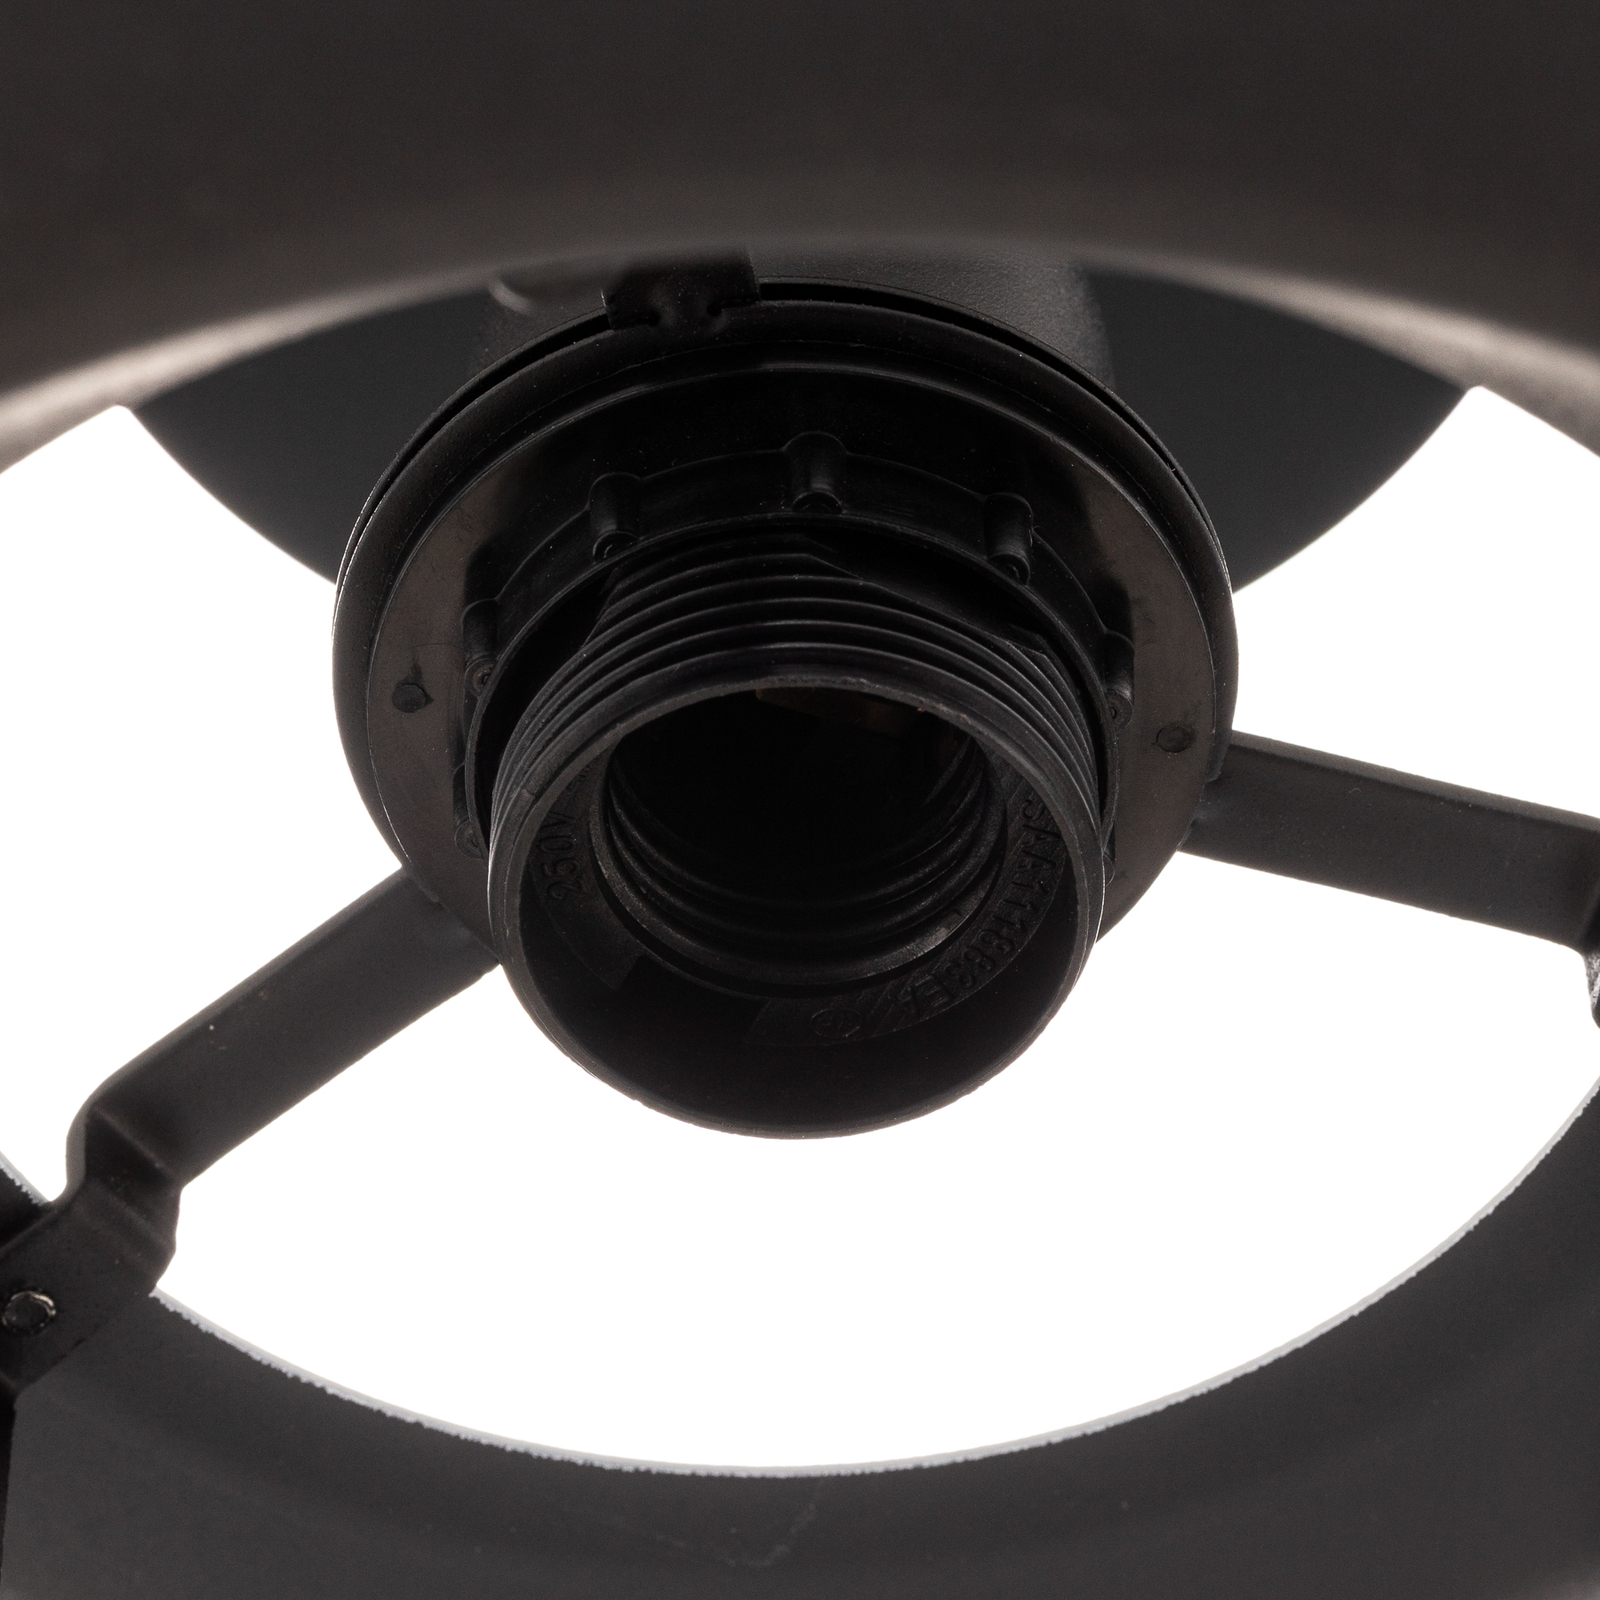 Lucande Kellina plafondlamp in zwart